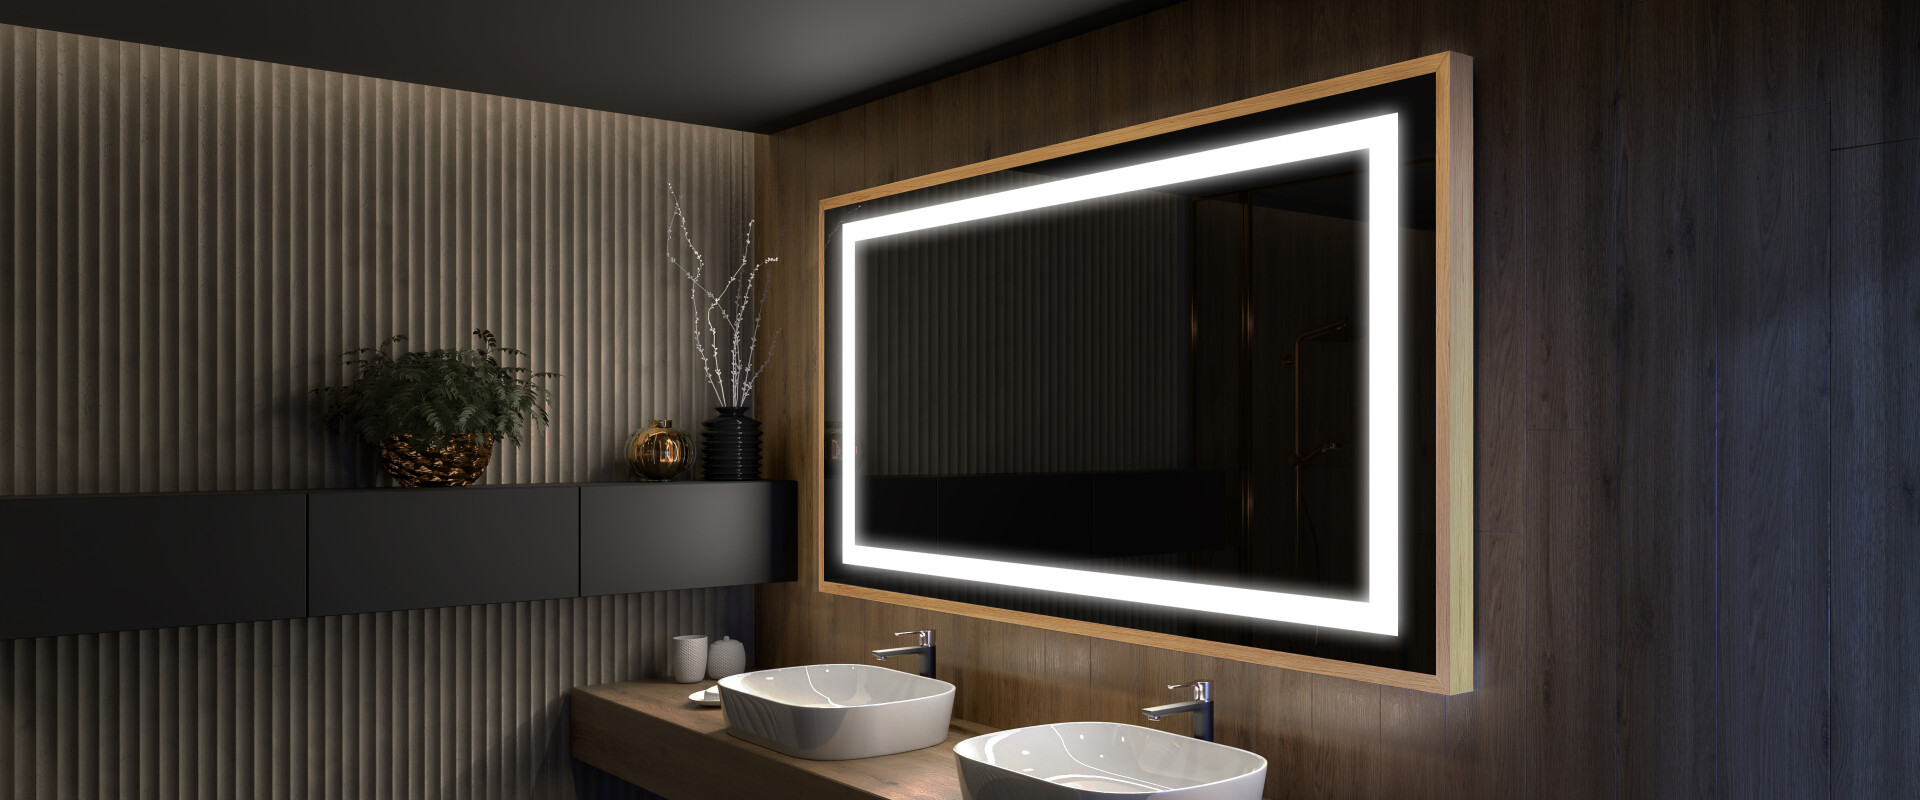 LED Wand- und Badspiegel nach Maß konfigurieren